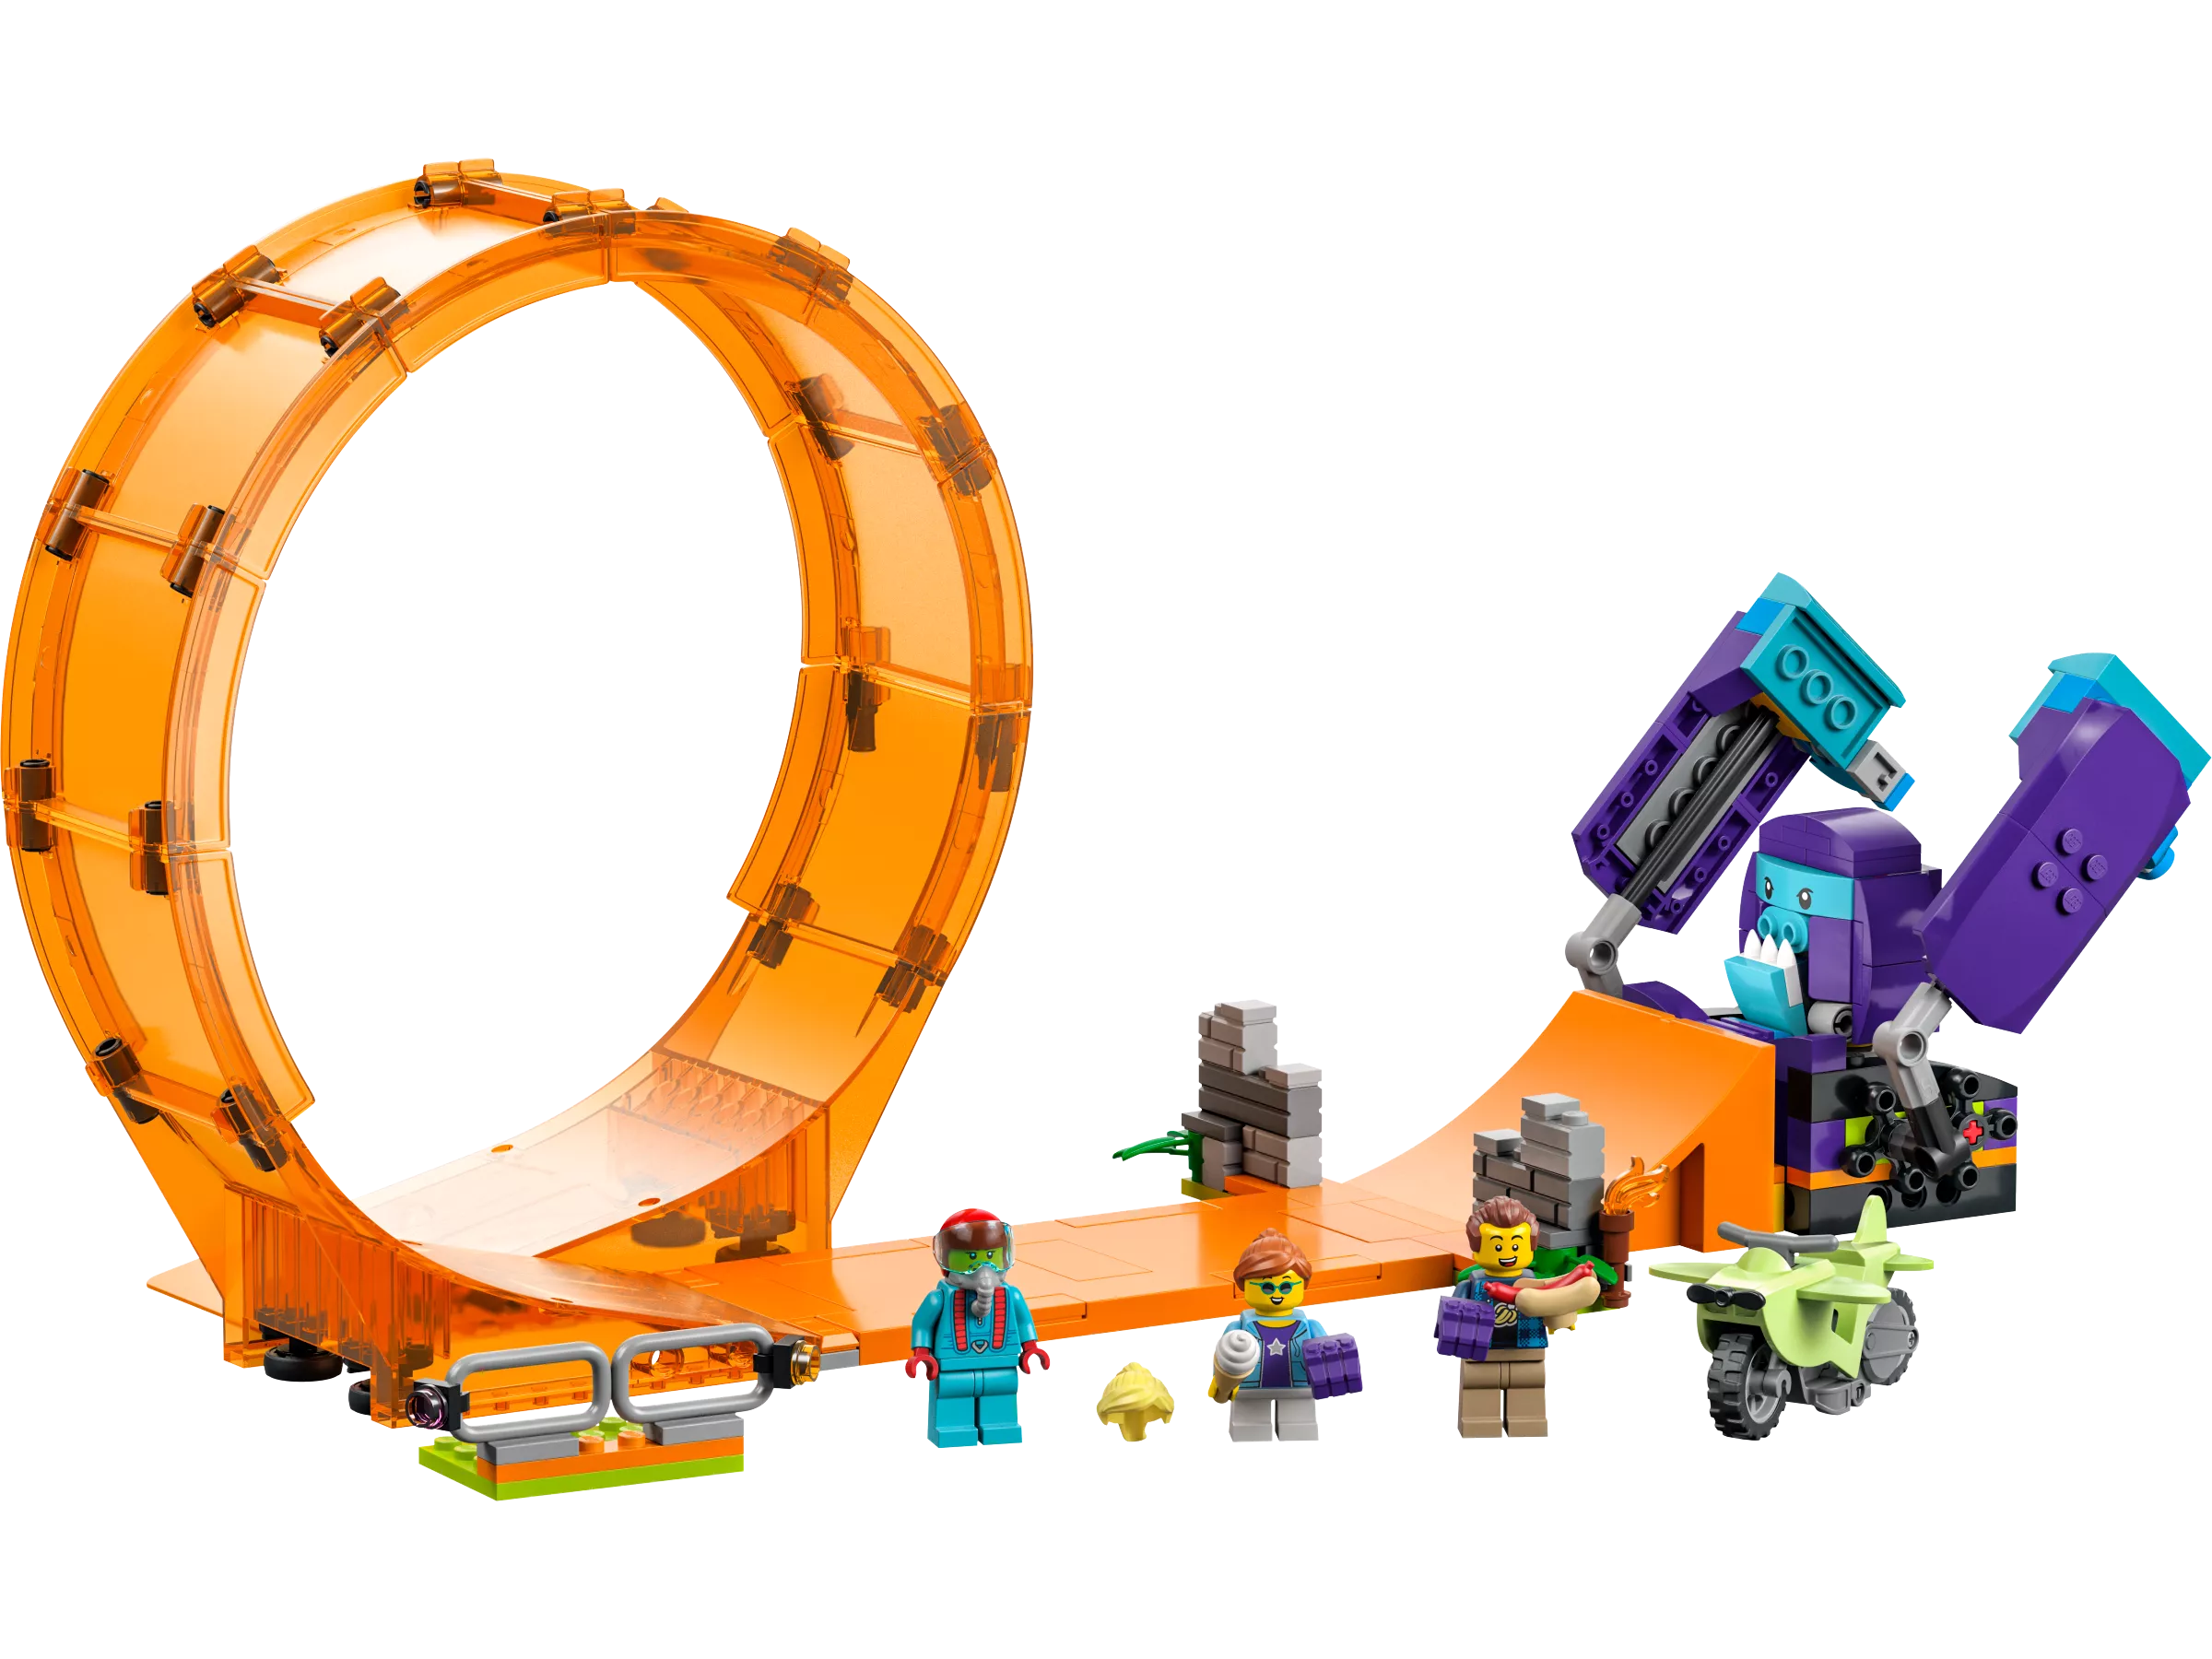 LEGO 60338 Schimpansen-Stuntlooping Action-Spielzeug